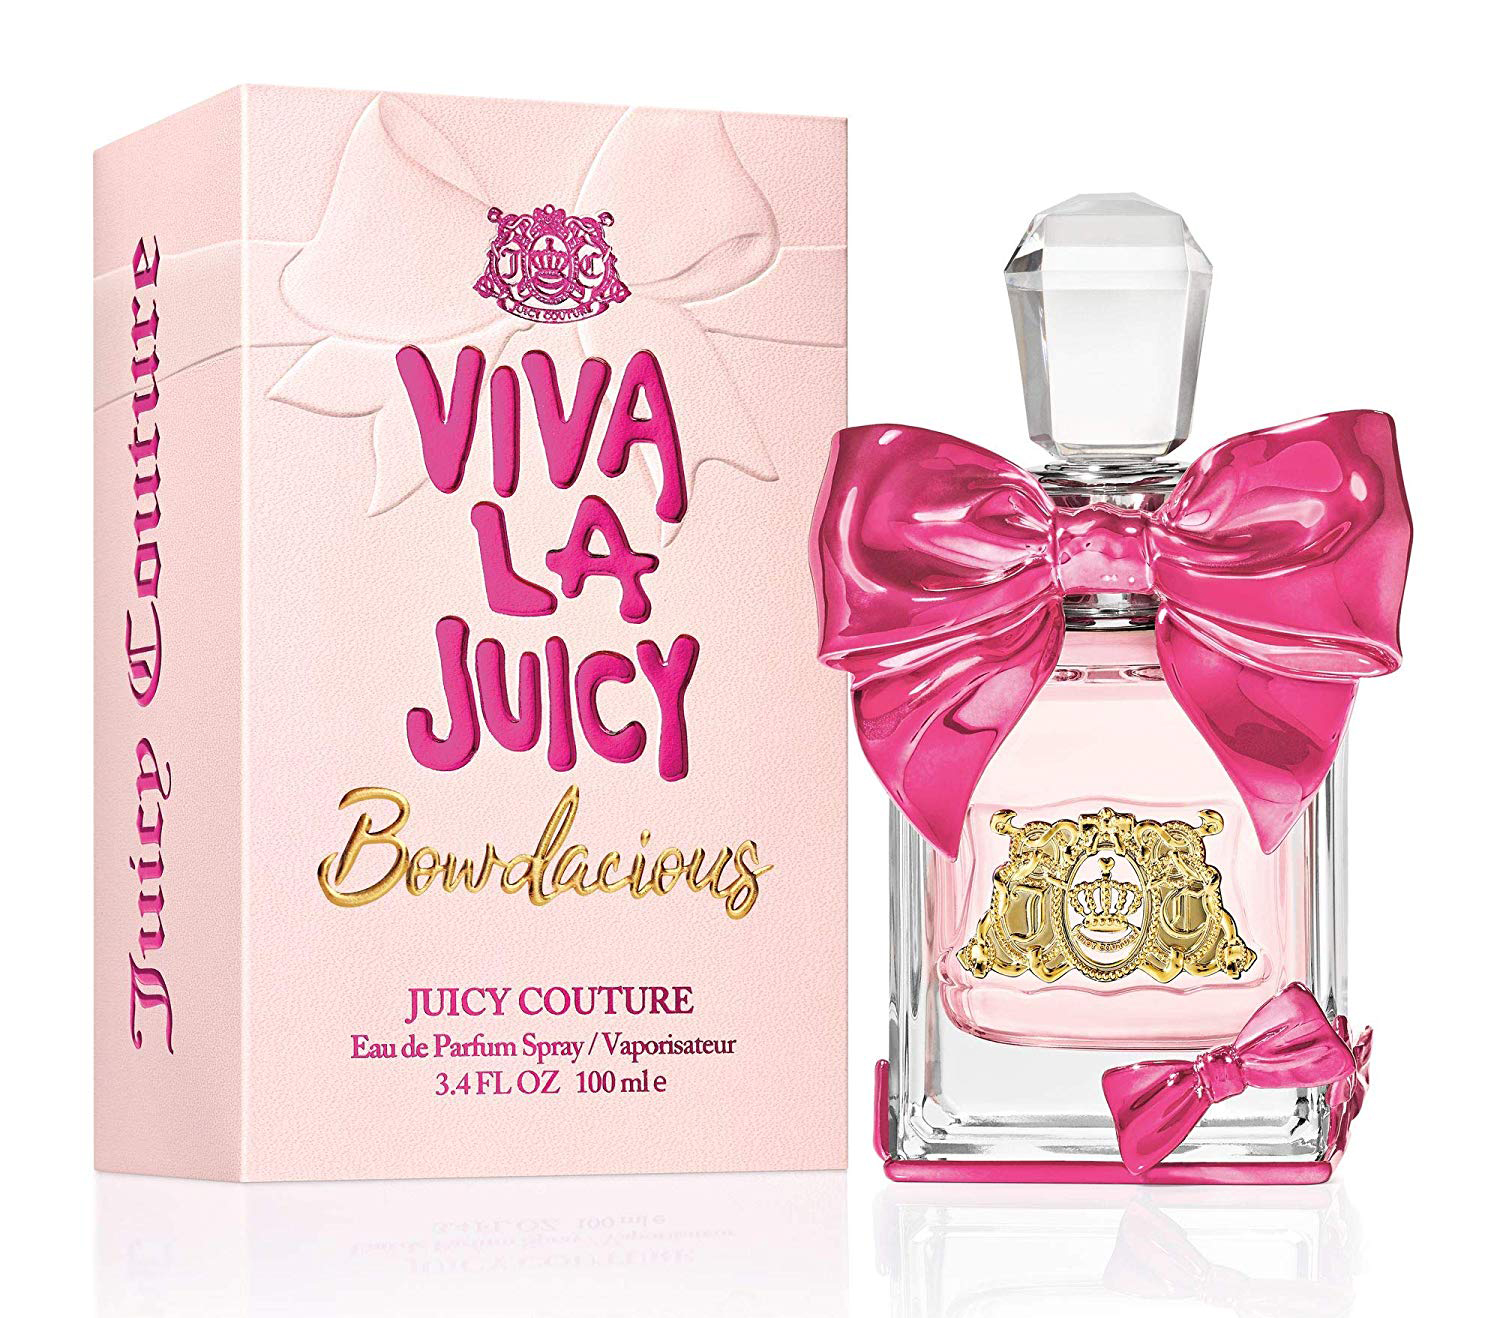 Viva La Juicy Bowdacious Juicy Couture Perfume A Novo